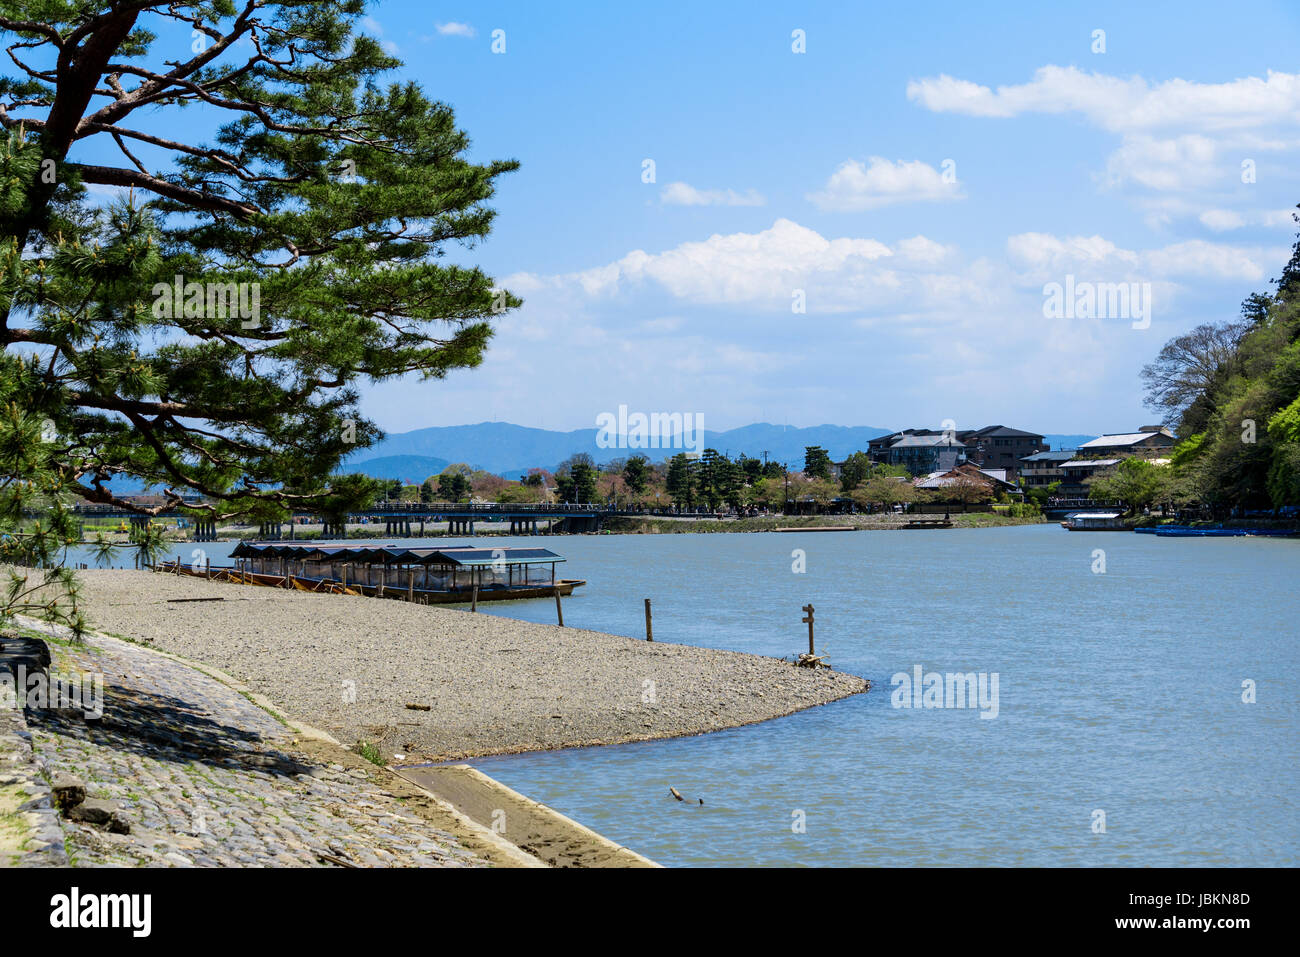 Katsura river at Arashiyama, sightseeing boats  moored at the riverbank and Togetsukyo bridge in the background. Stock Photo